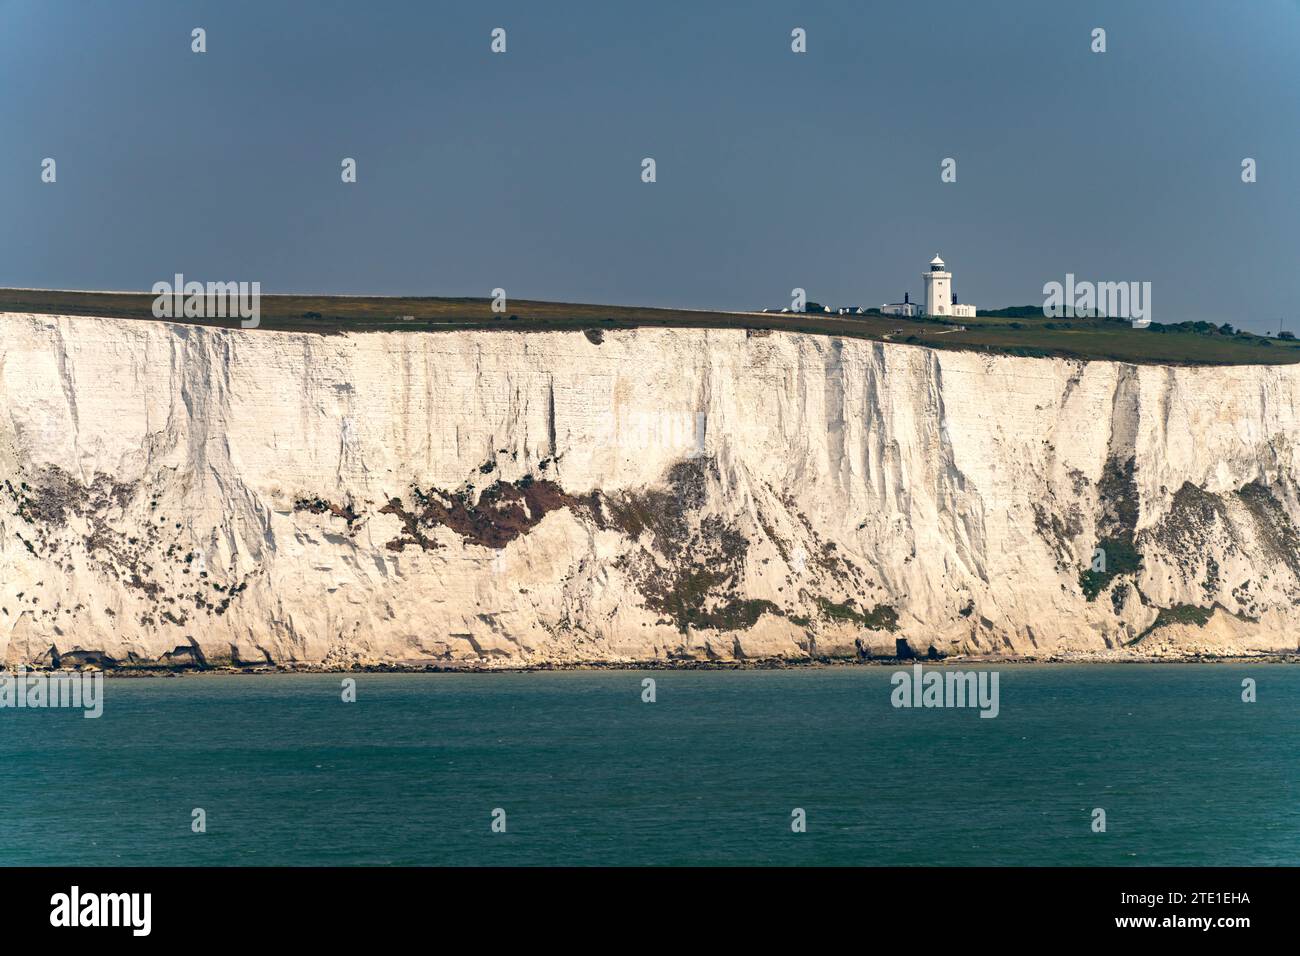 Die Kreidefelsen von dover und der South-Foreland-Leuchtturm am Ärmelkanal bei dover, Kent, England, Großbritannien, Europa | The White Cliffs of Do Foto Stock